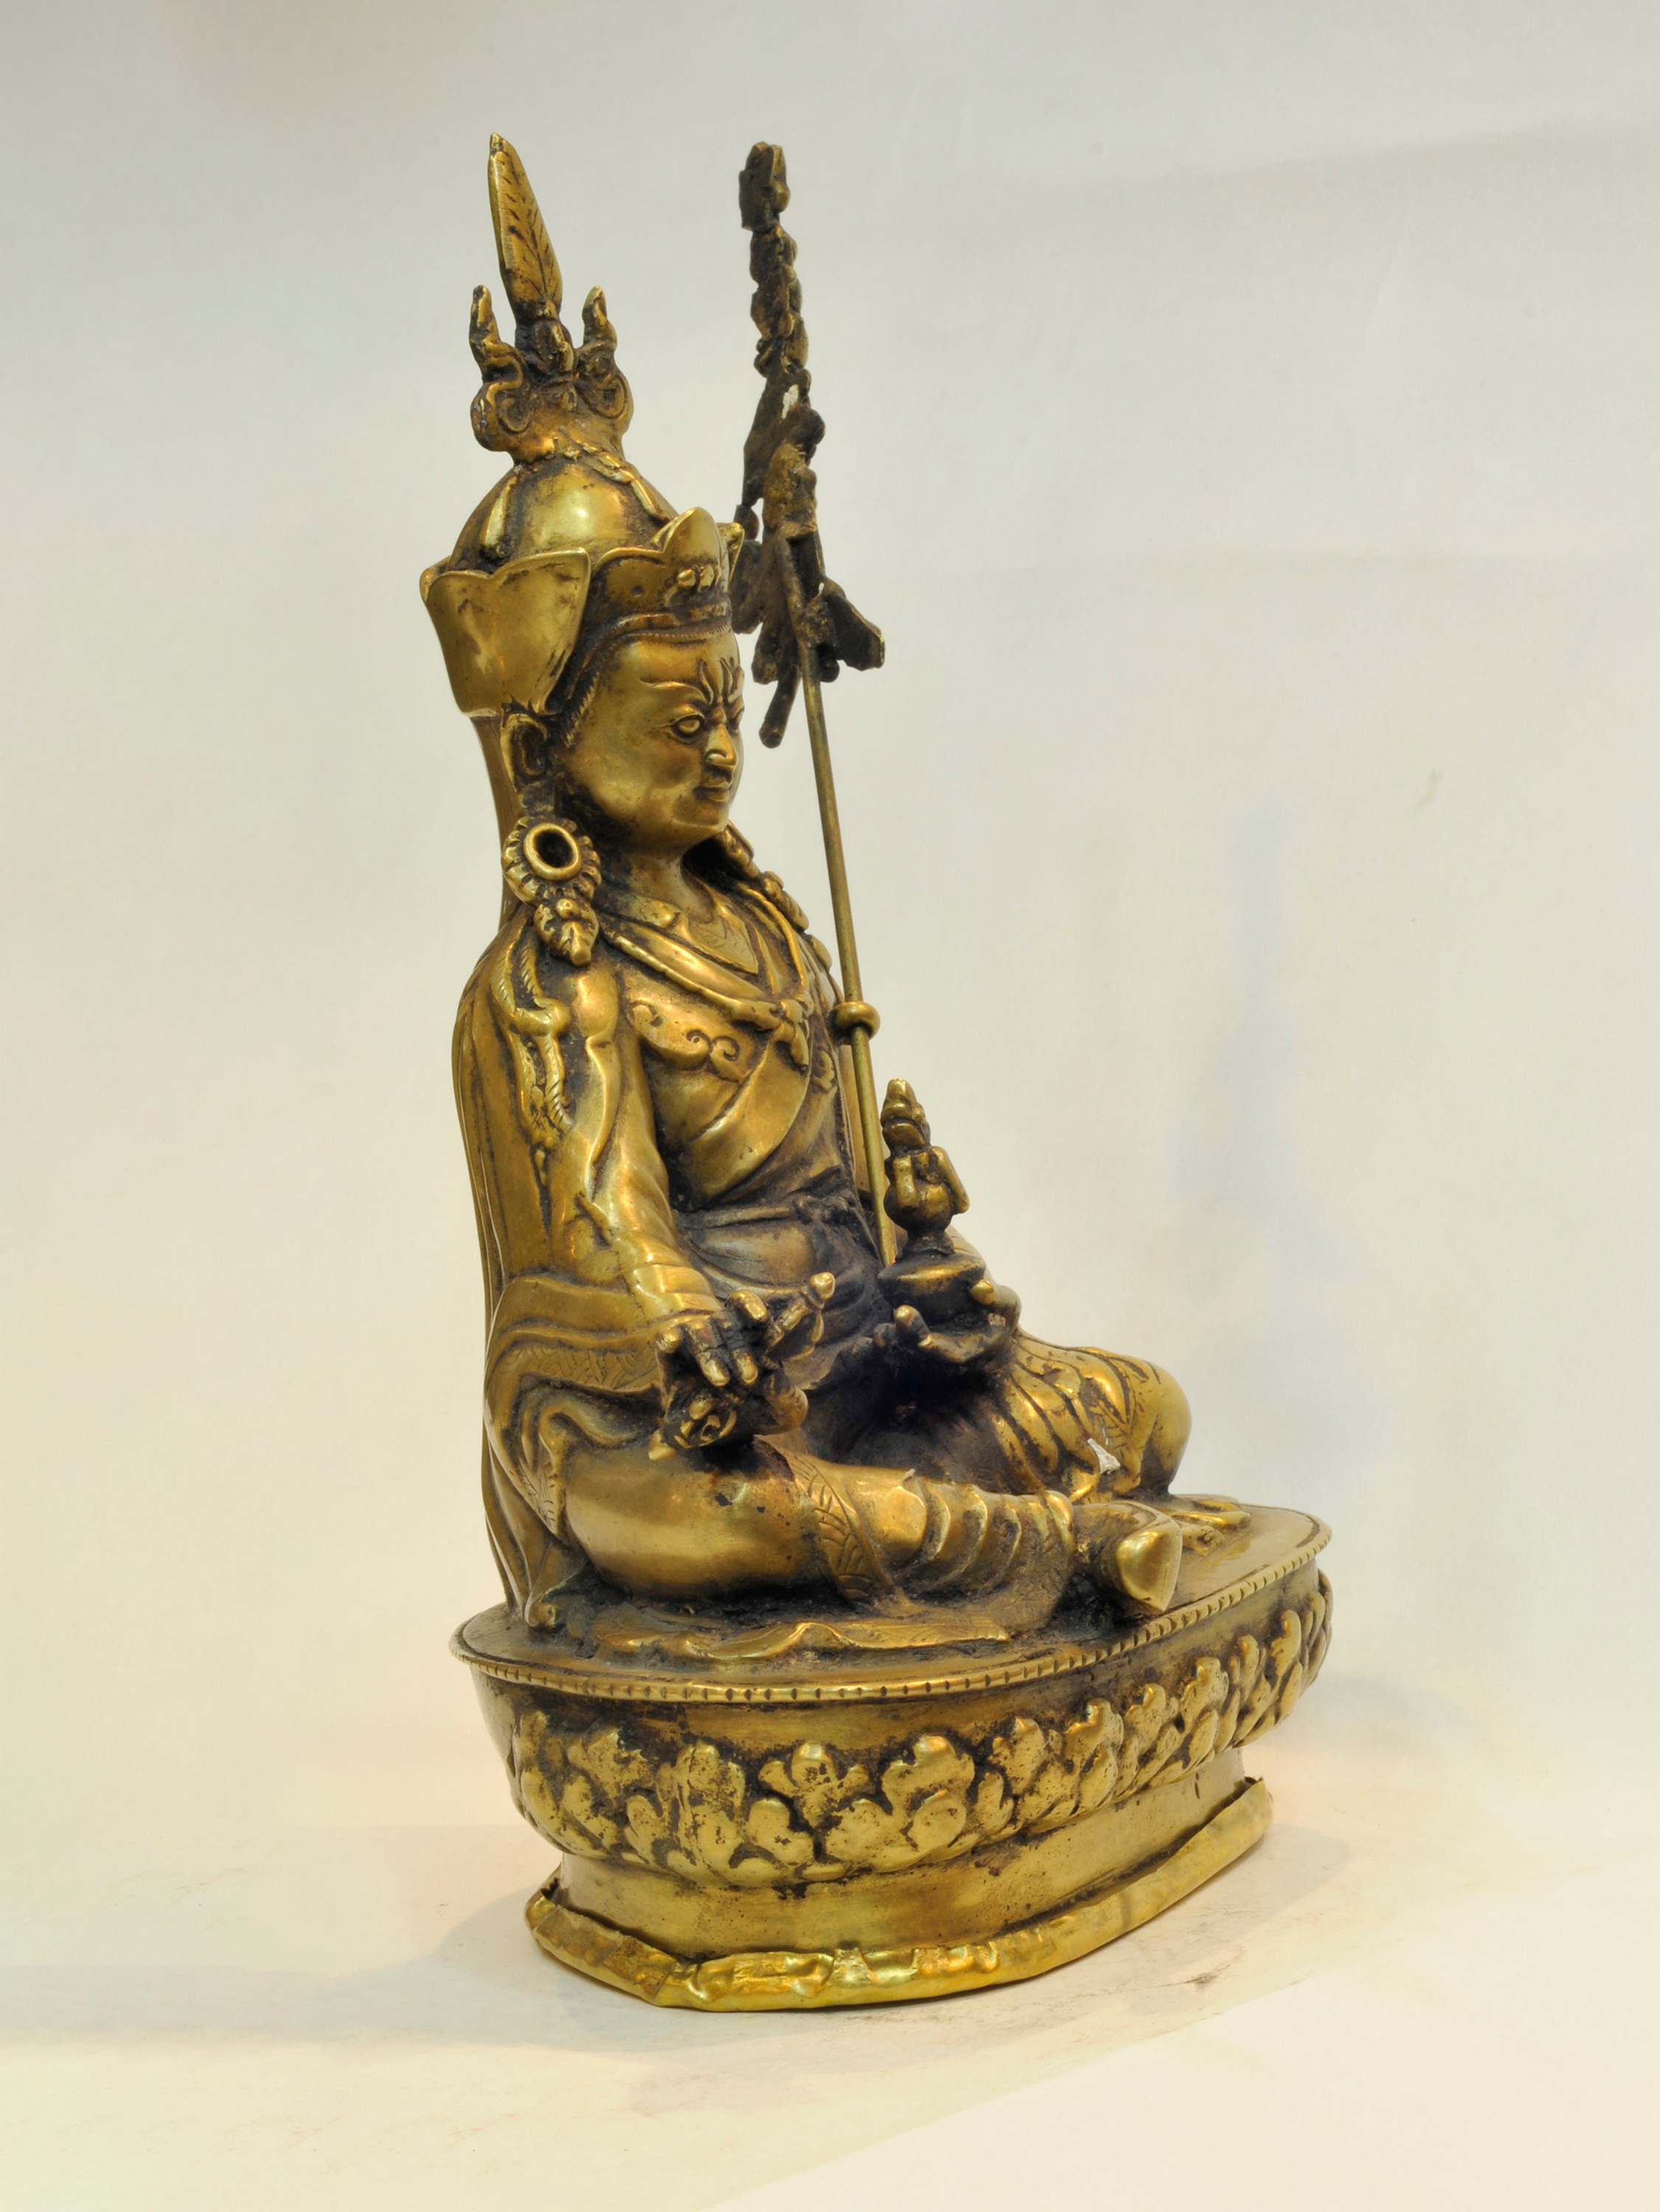 master Quality Buddhist Handmade Statue Of Padmasambhava guru Rinpoche